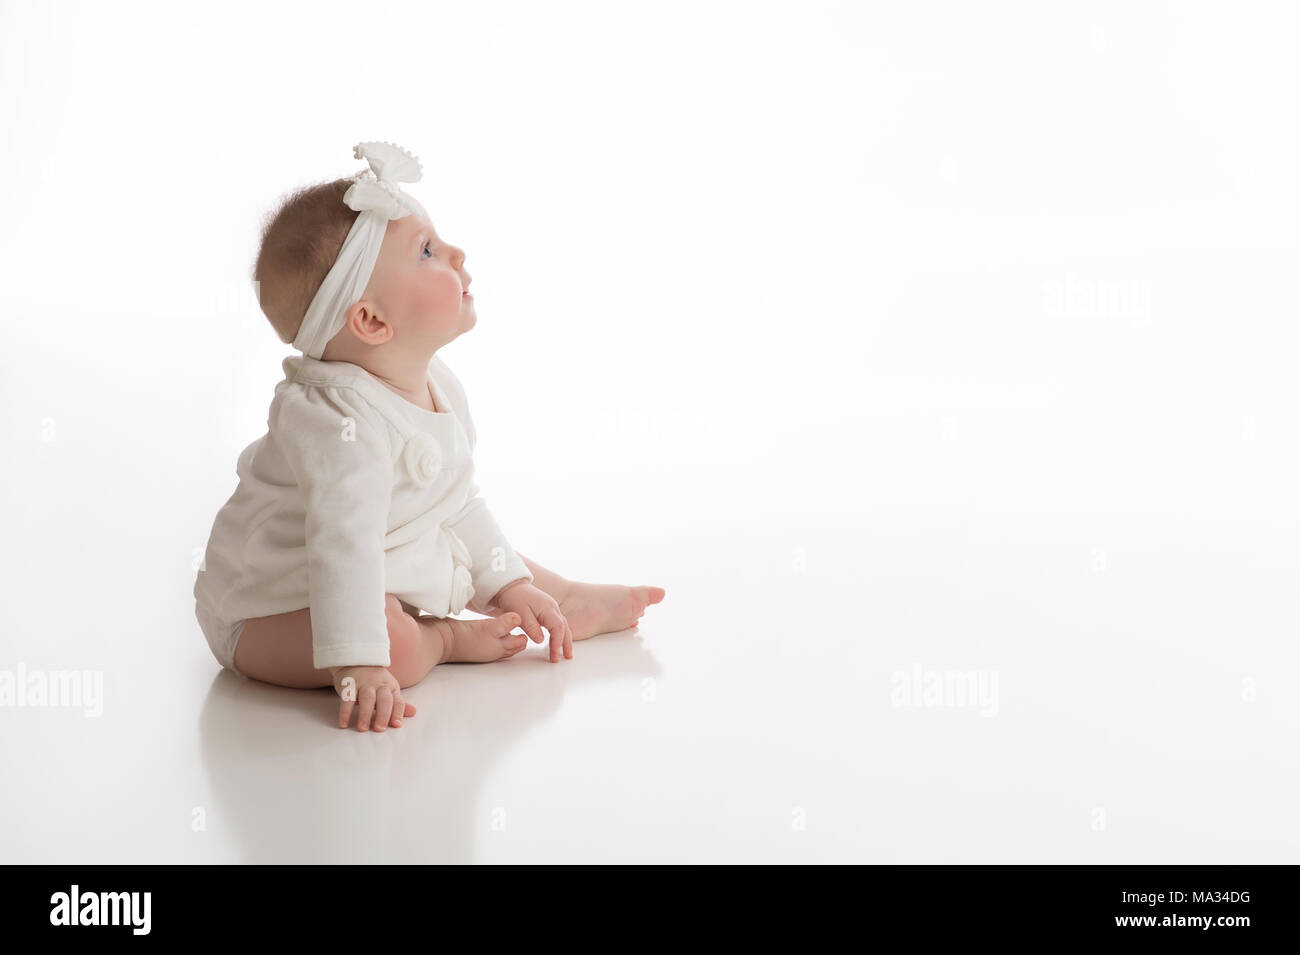 Anzeigen eines Profils mit einem lächelnden, sieben Monate alt, Baby Mädchen tragen weiße. Im Studio auf einem weißen, nahtlose Kulisse erschossen. Stockfoto